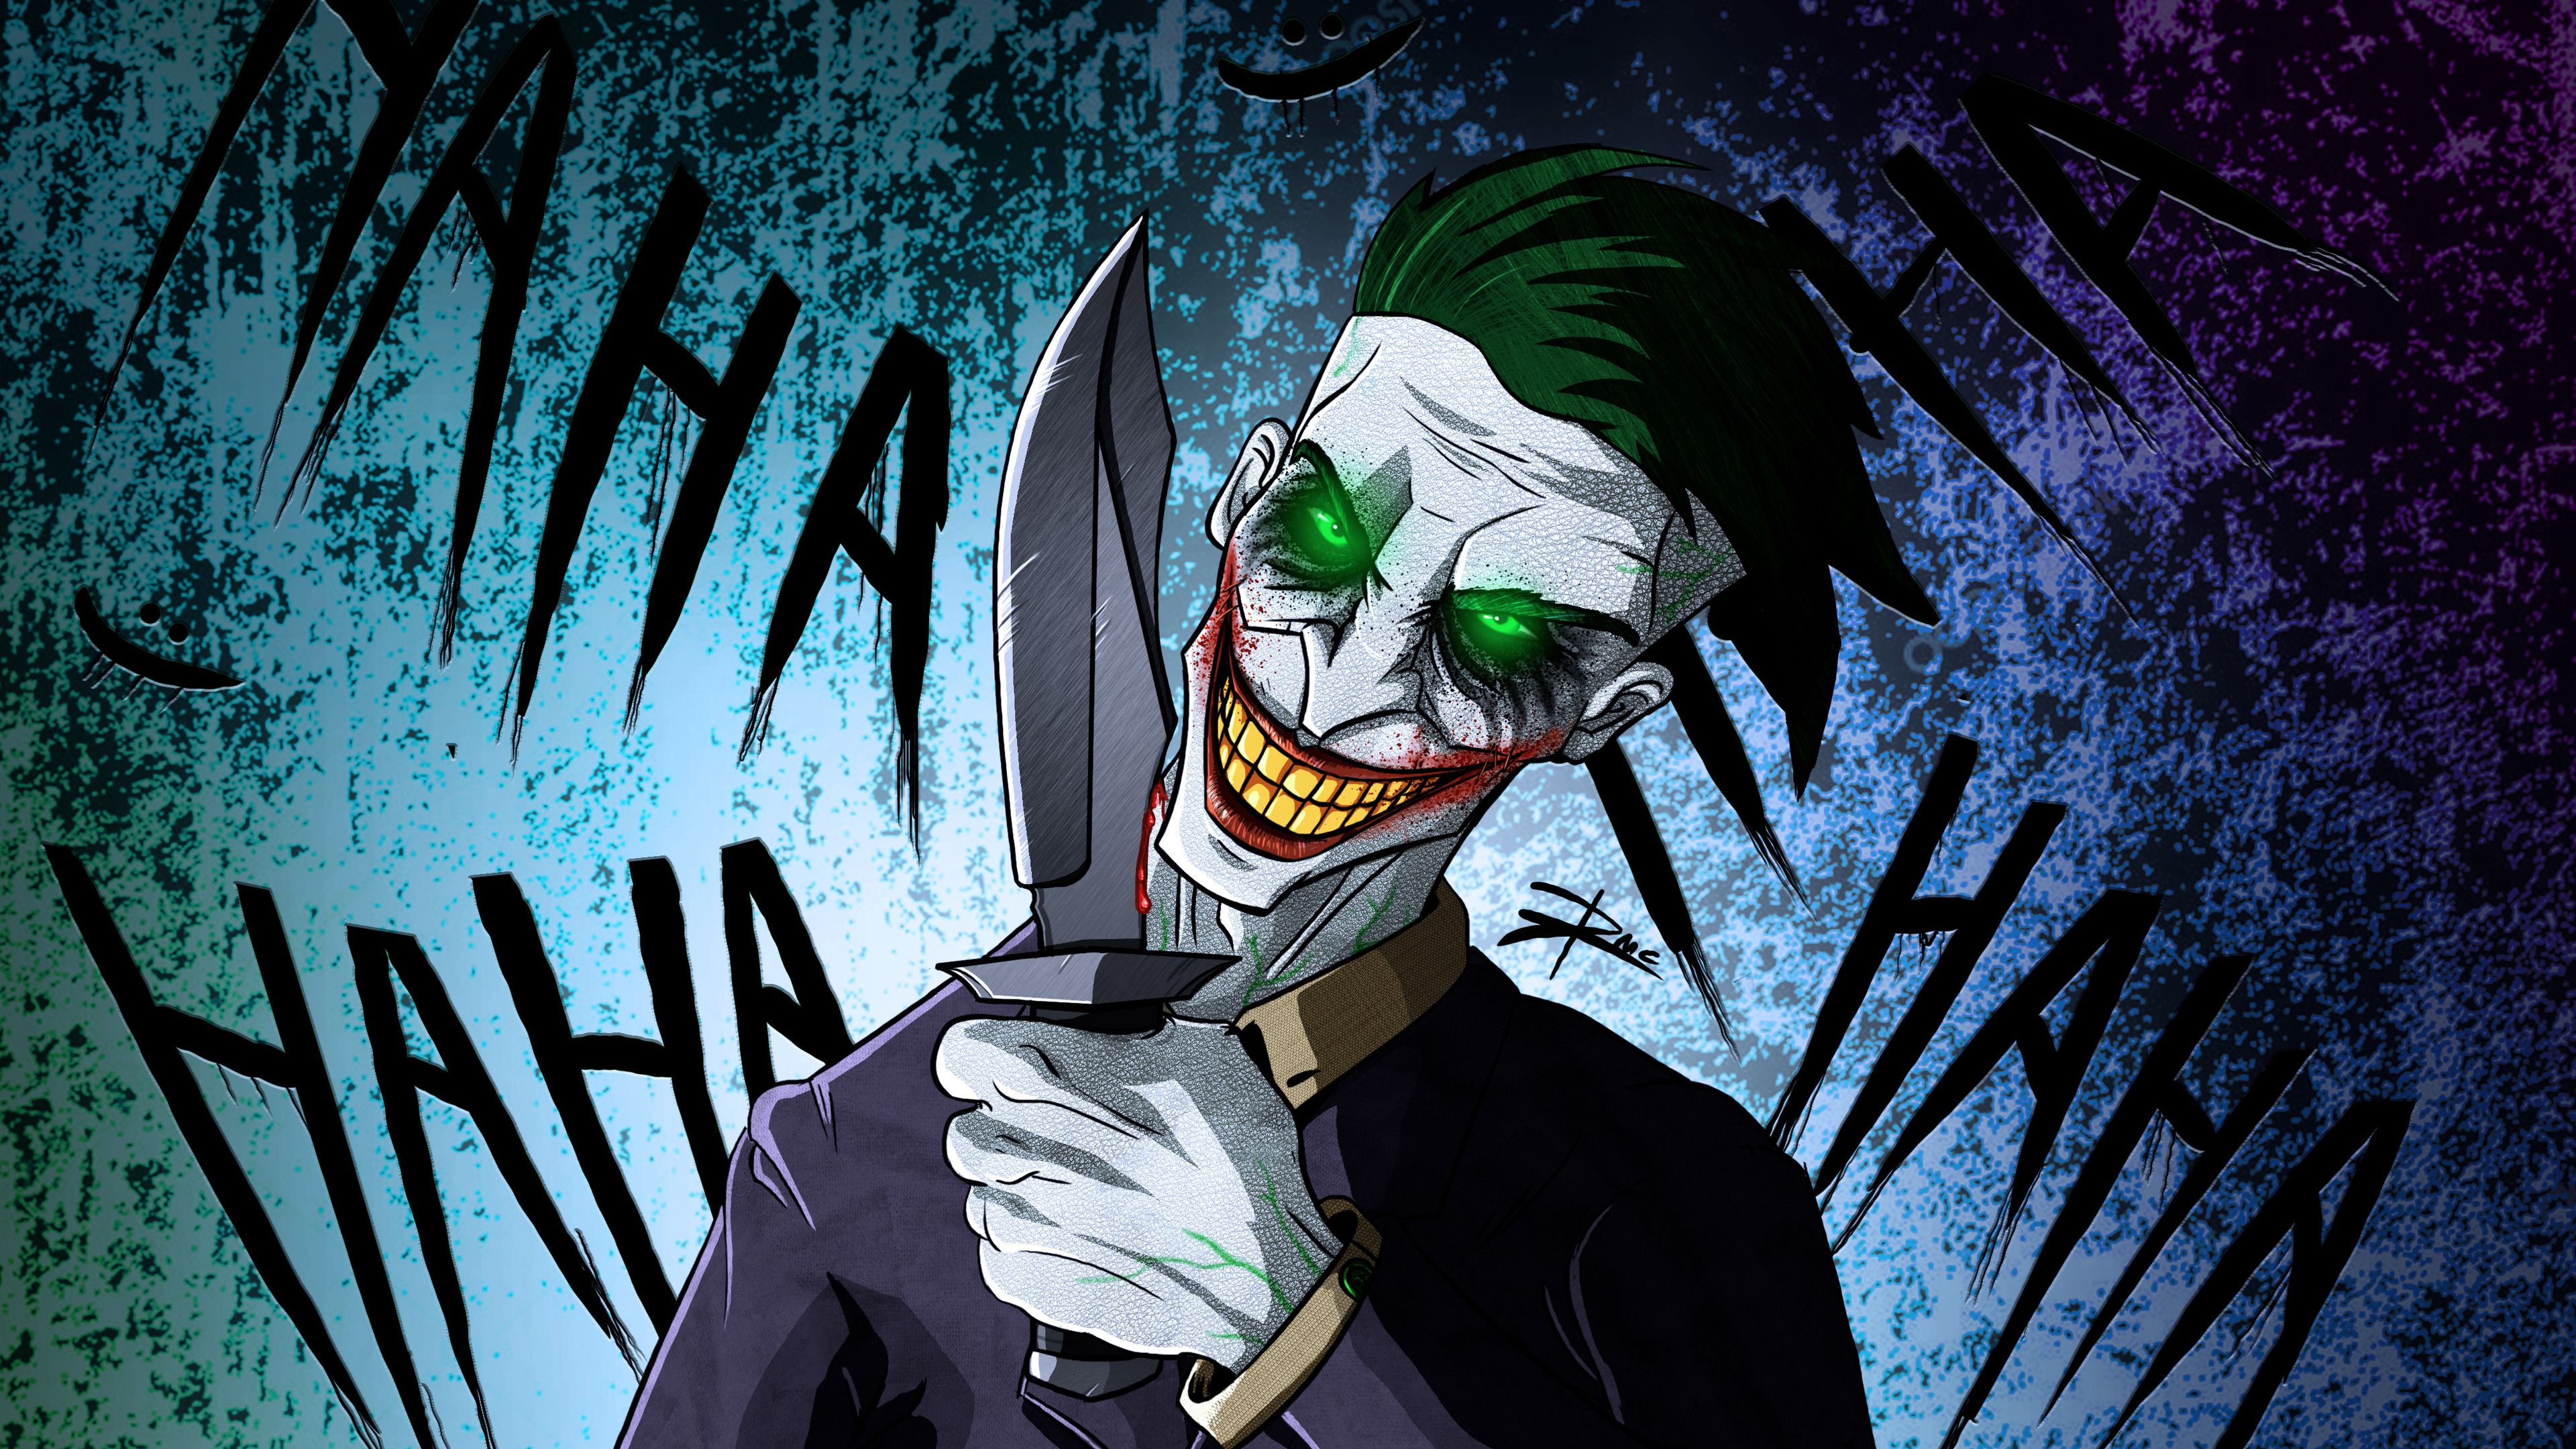 Download Gambar Wallpaper Joker Ultra Hd terbaru 2020